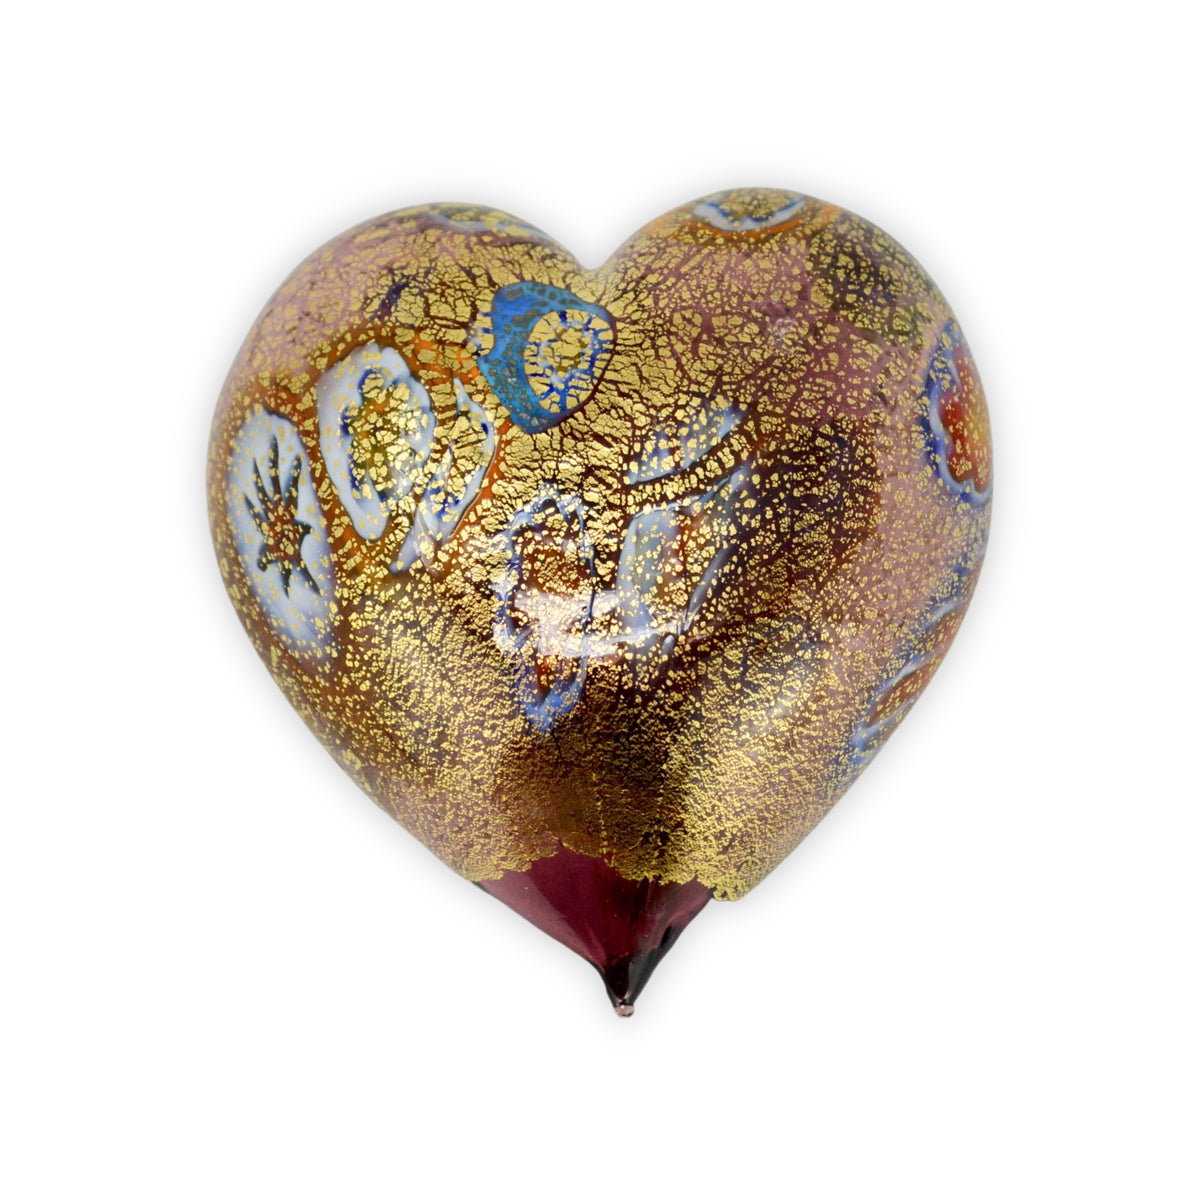 Murano Glass Blown Heart with Millefiori, multiple colors - My Italian Decor